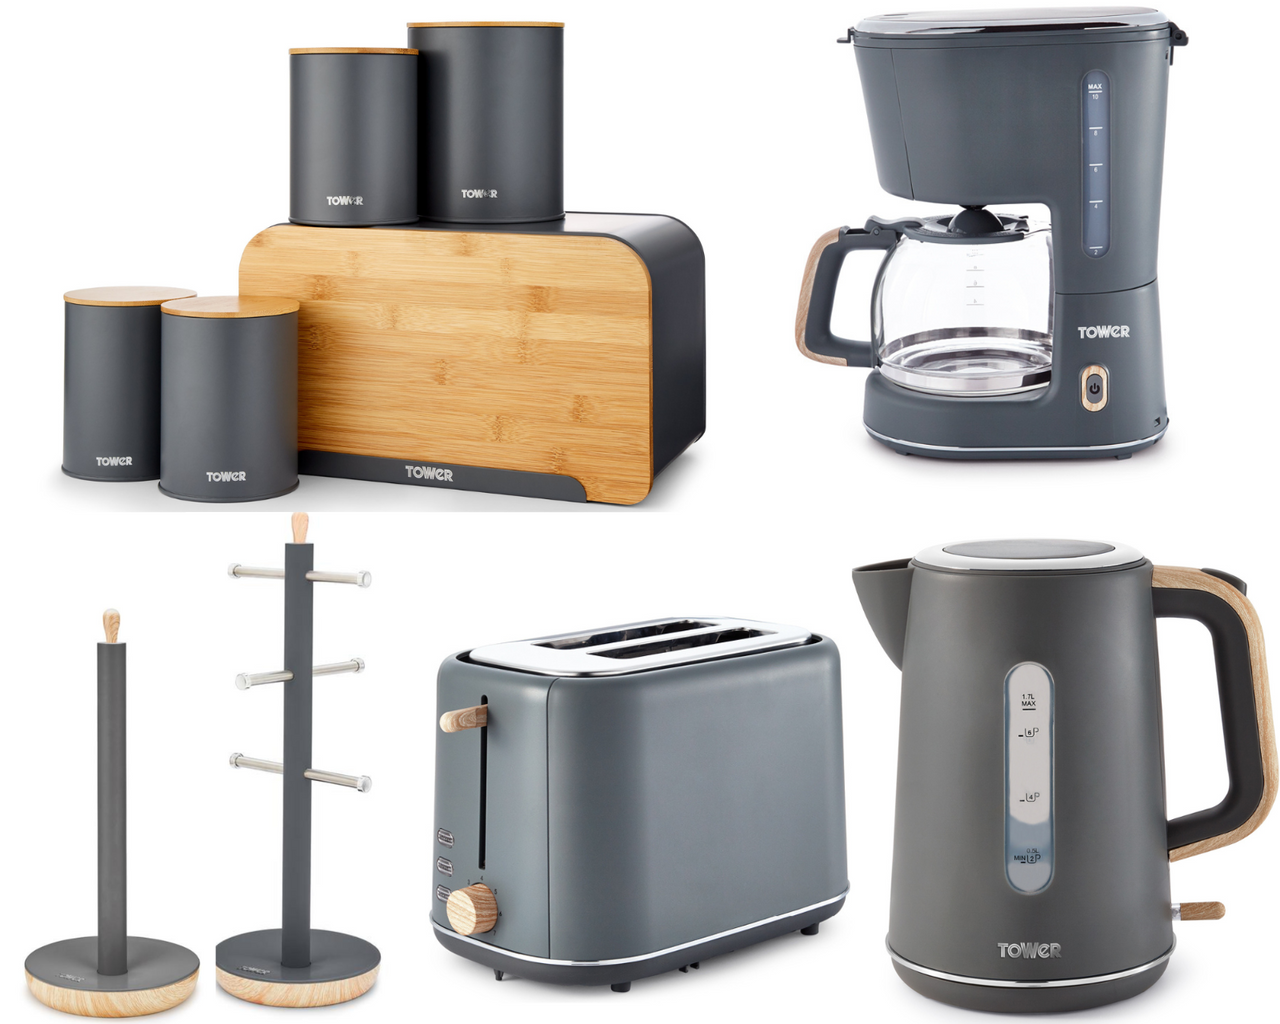 Tower Scandi Grey Kitchen Set of 10 Kettle Toaster Coffee Maker Kitchen Storage